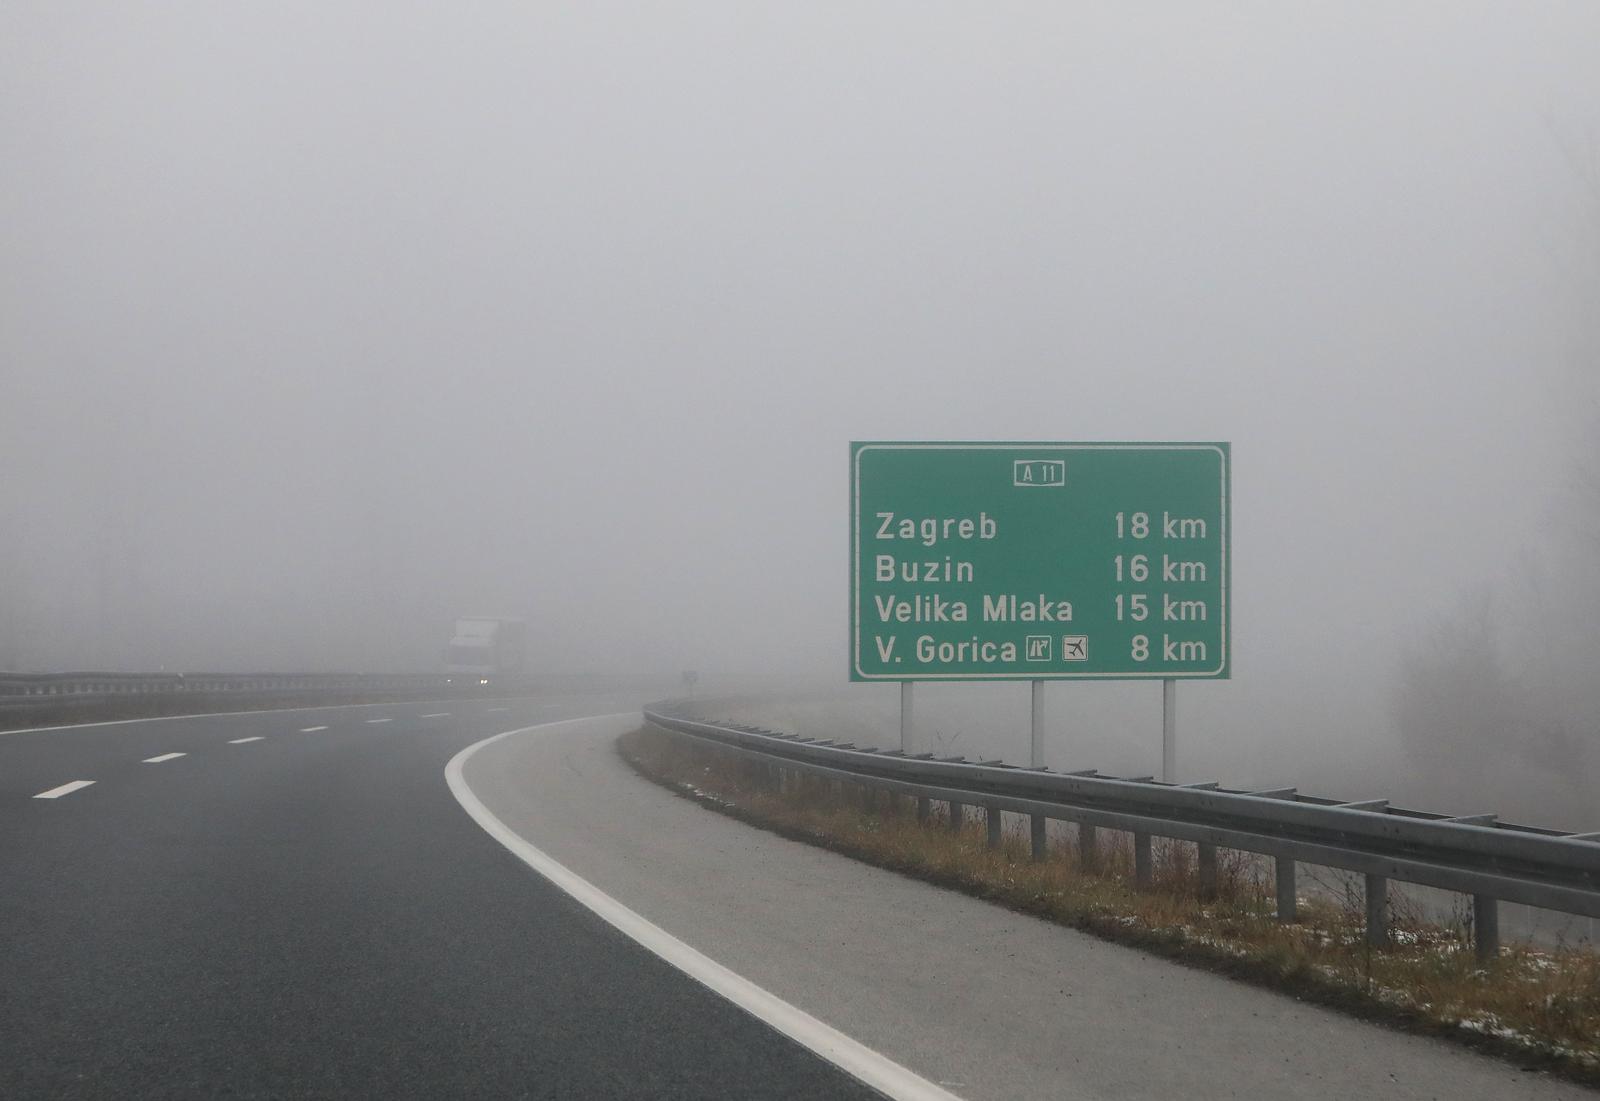 28.10.2021., Velika Gorica - Magla otezava promet u unutrasnjosti Hrvatske. Photo: Zeljko Hladika/PIXSELL